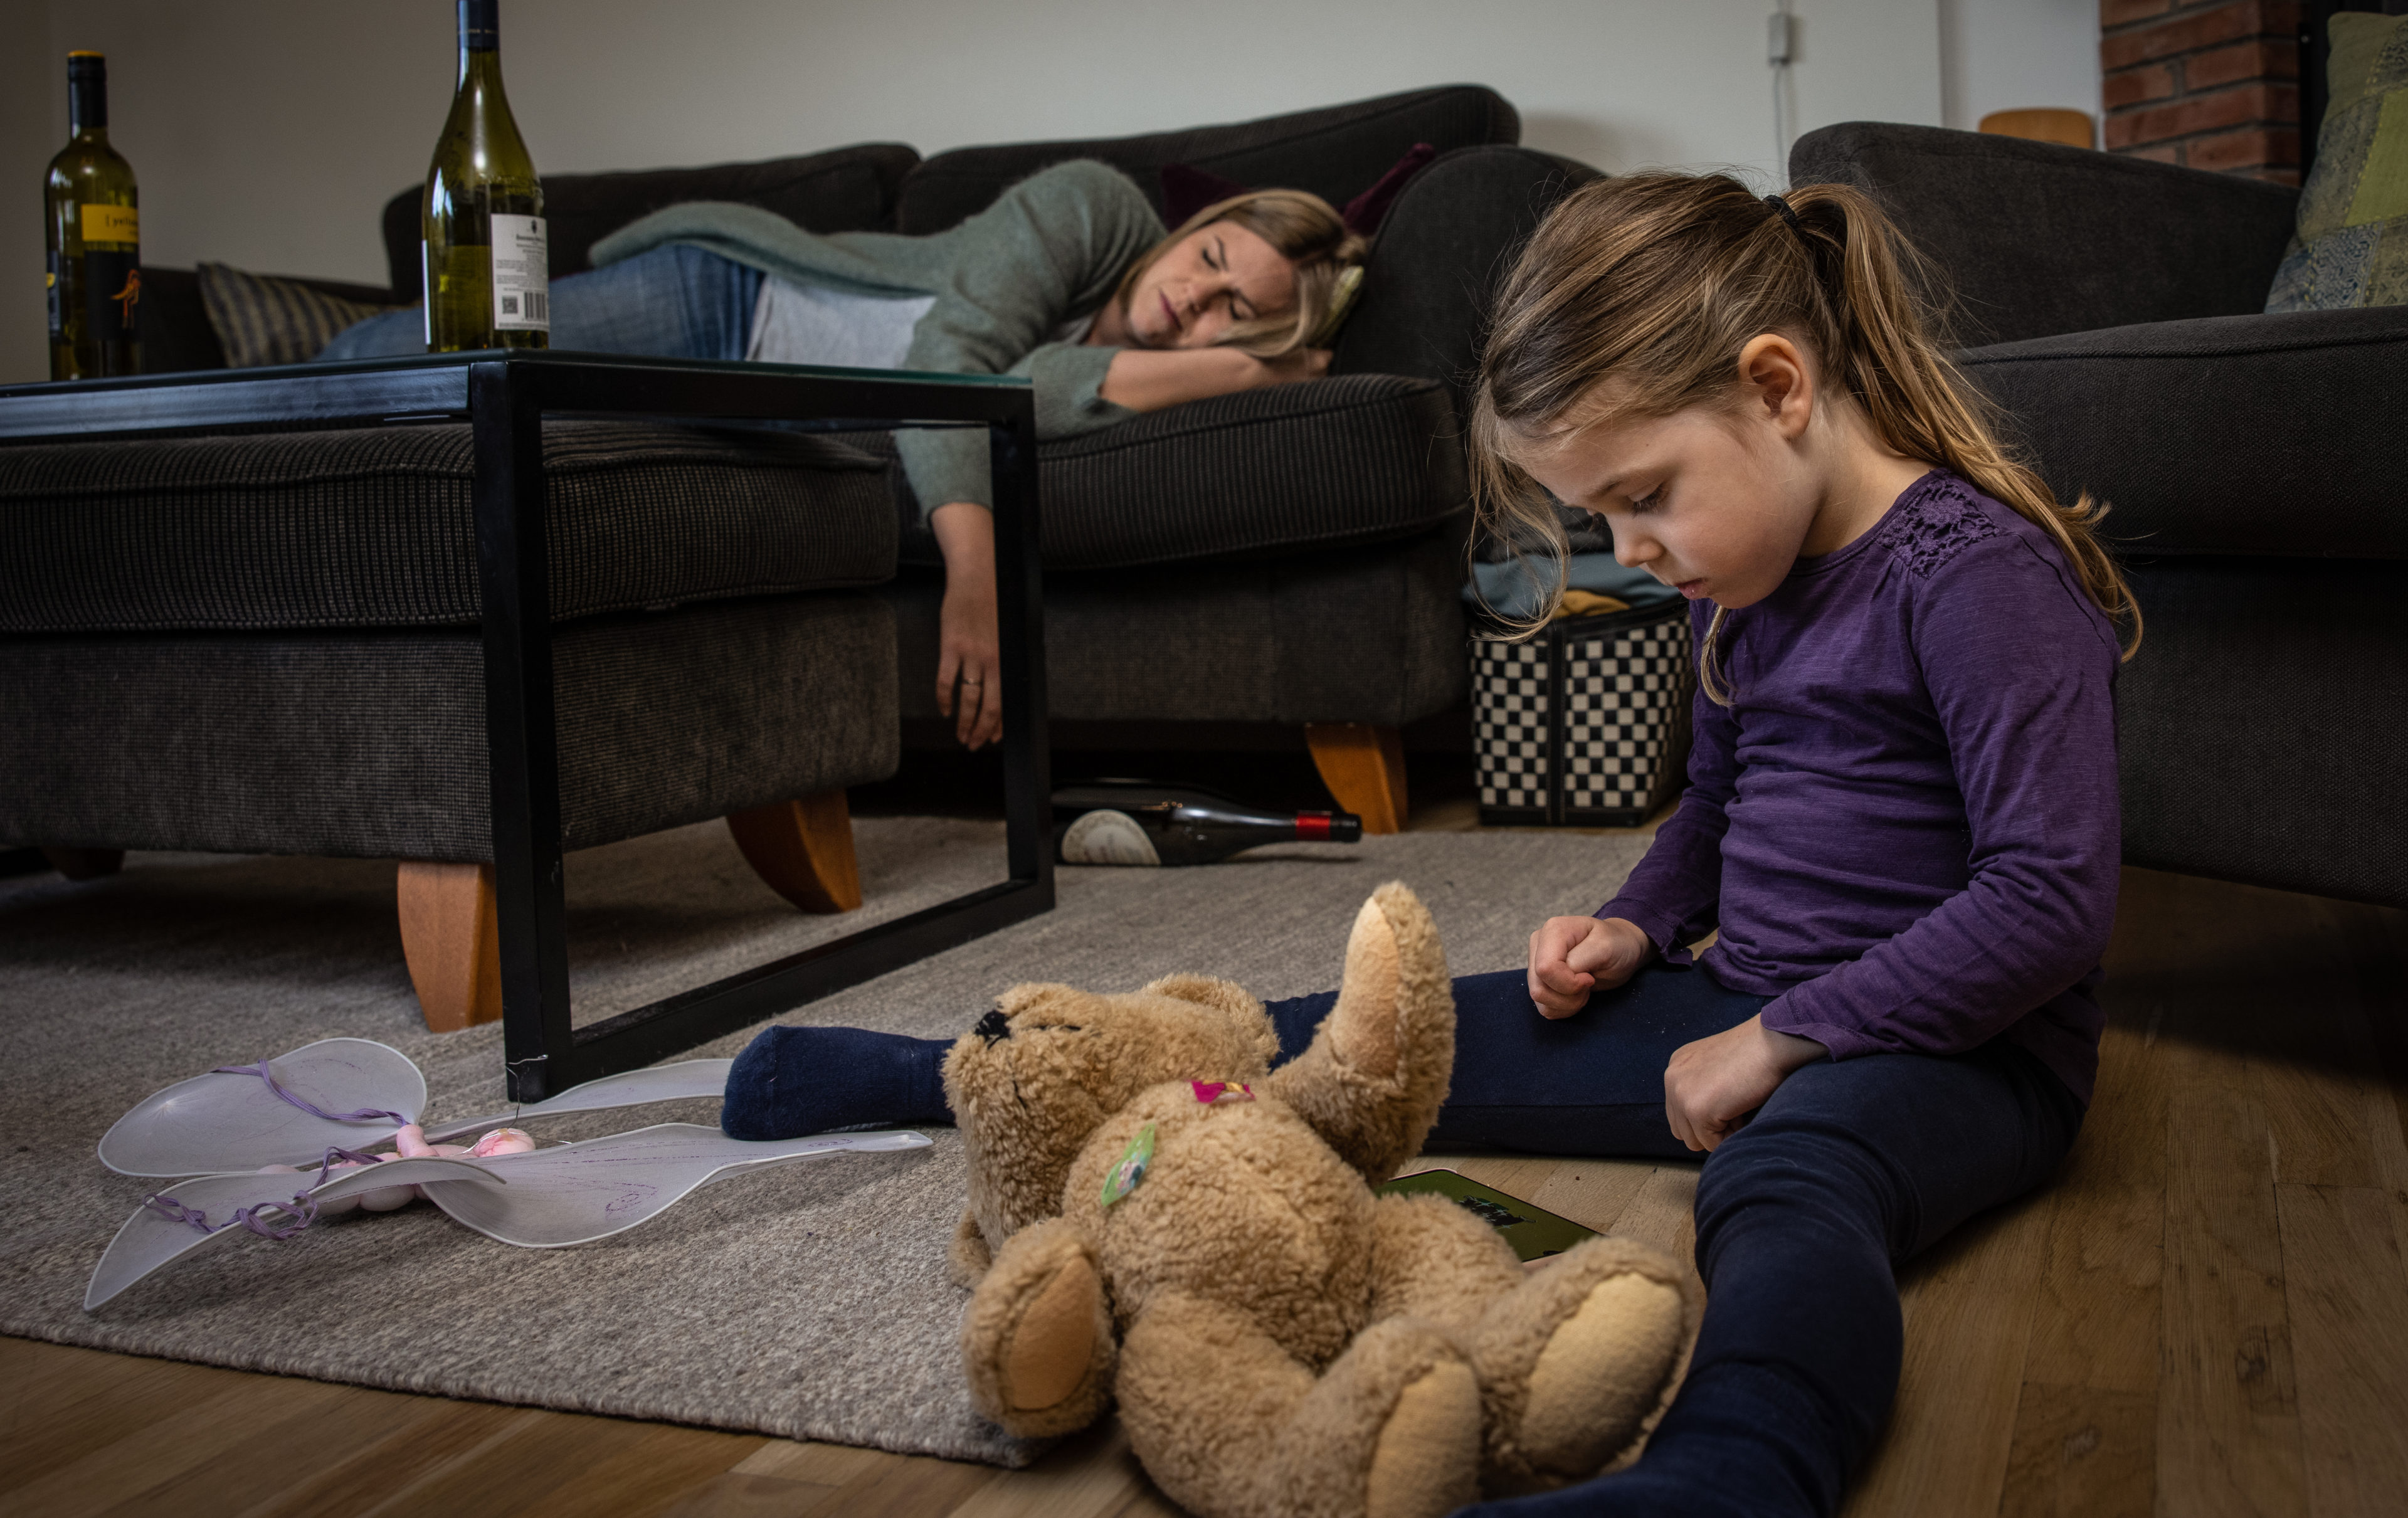 En jente sitter En jente sitter på gulvet og ser ned på bamsen sin. Hun er lei seg. Moren hennes ligger og sover på sofaen og man ser vinflasker på bordet